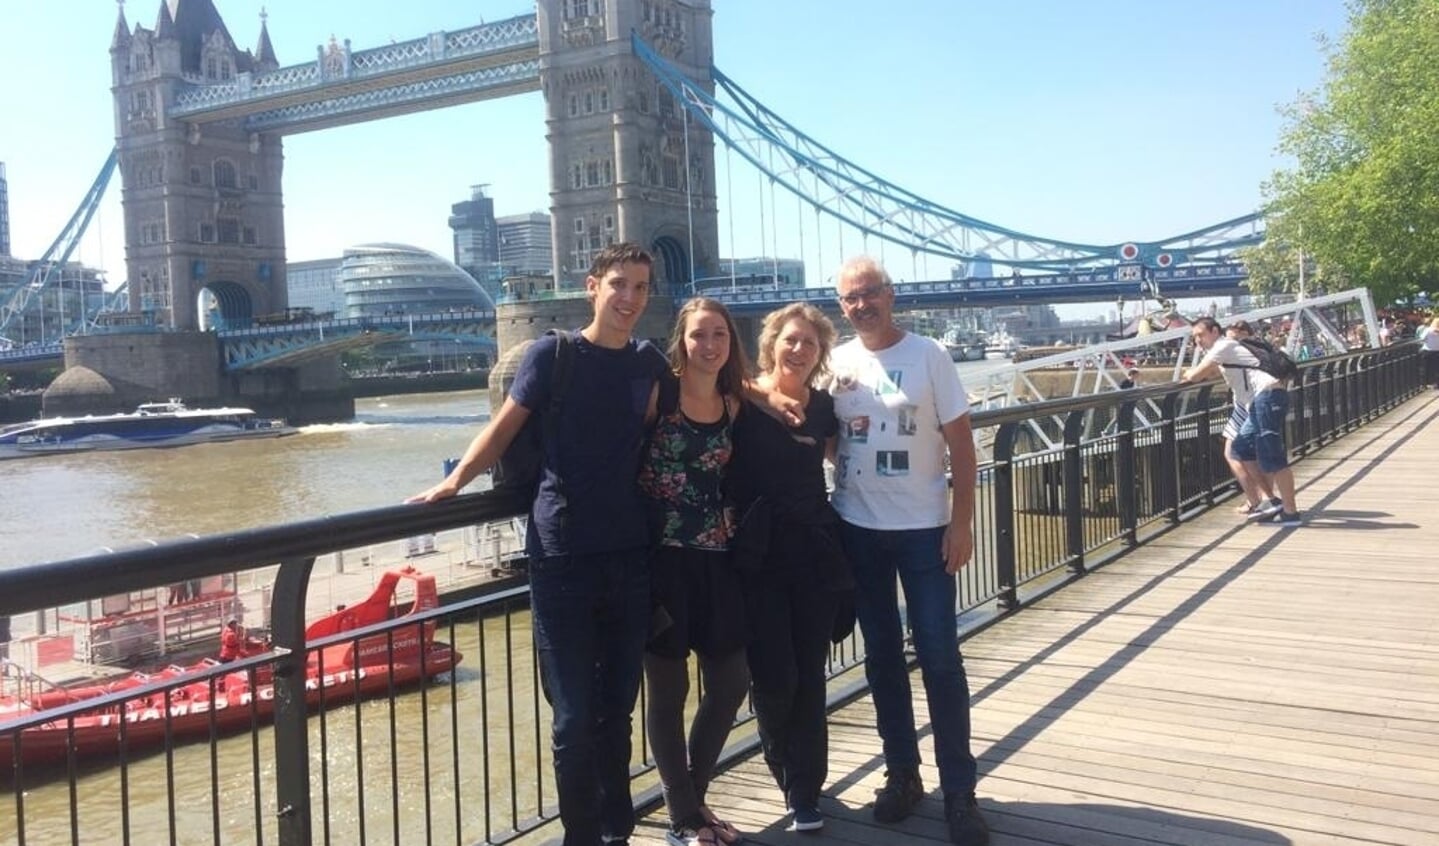 Het gezin tijdens een uitje in Londen.